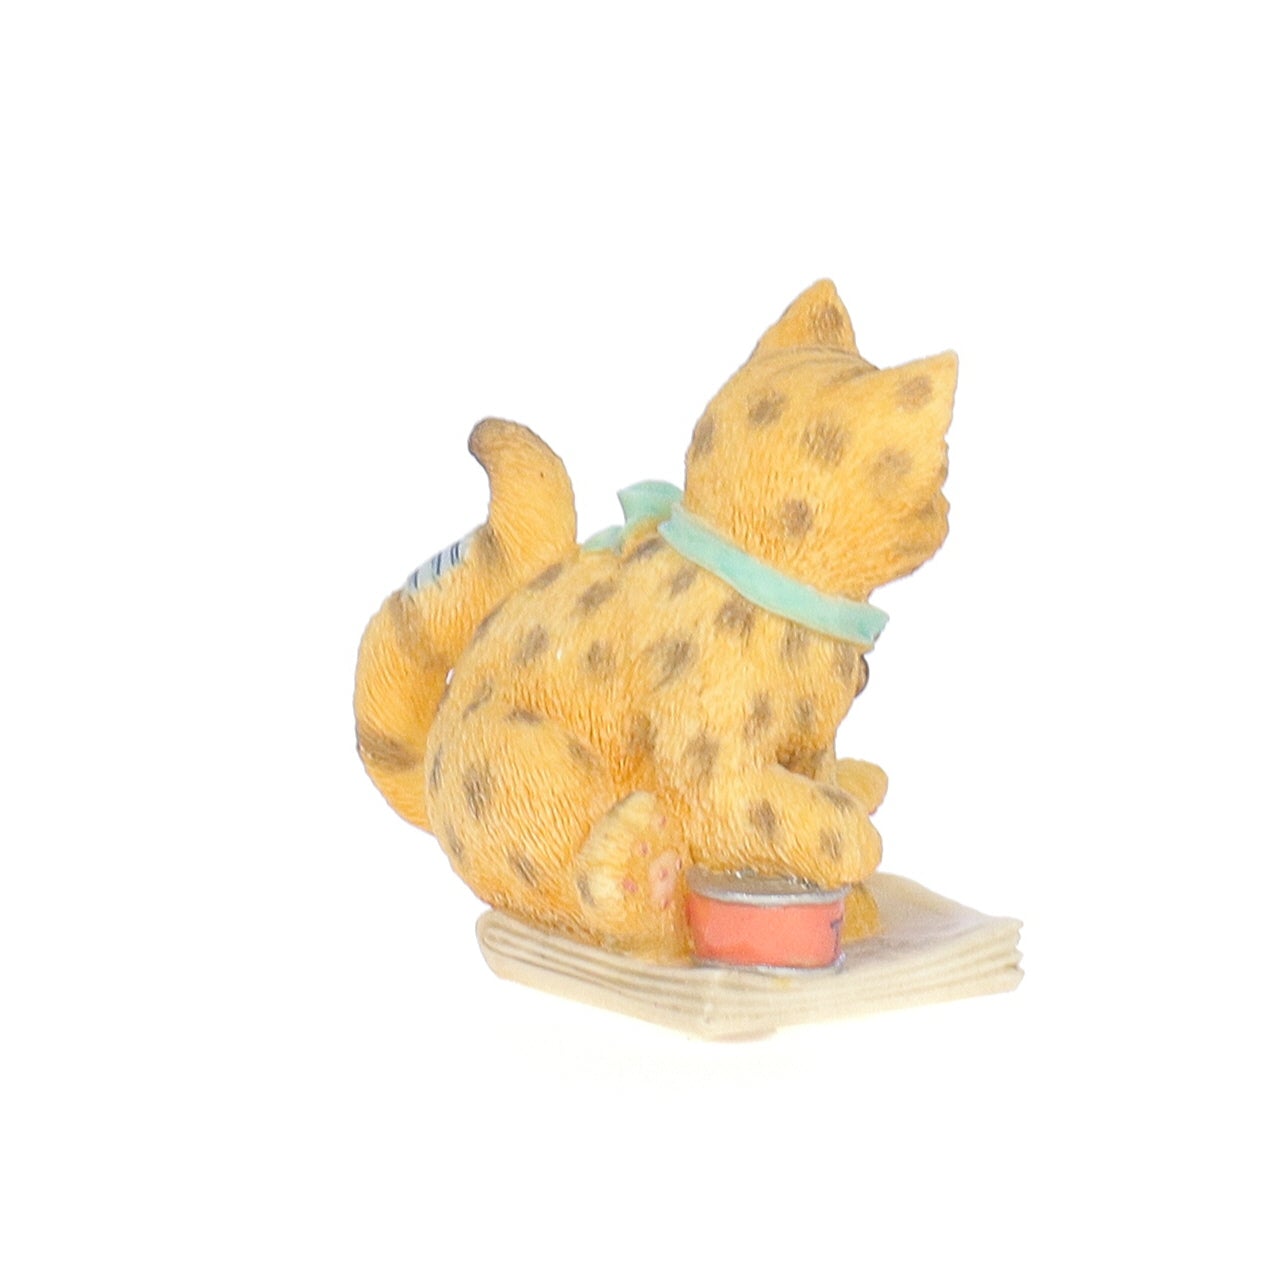 Calico_Kittens_Bengal_Kitten_Figurine_1997